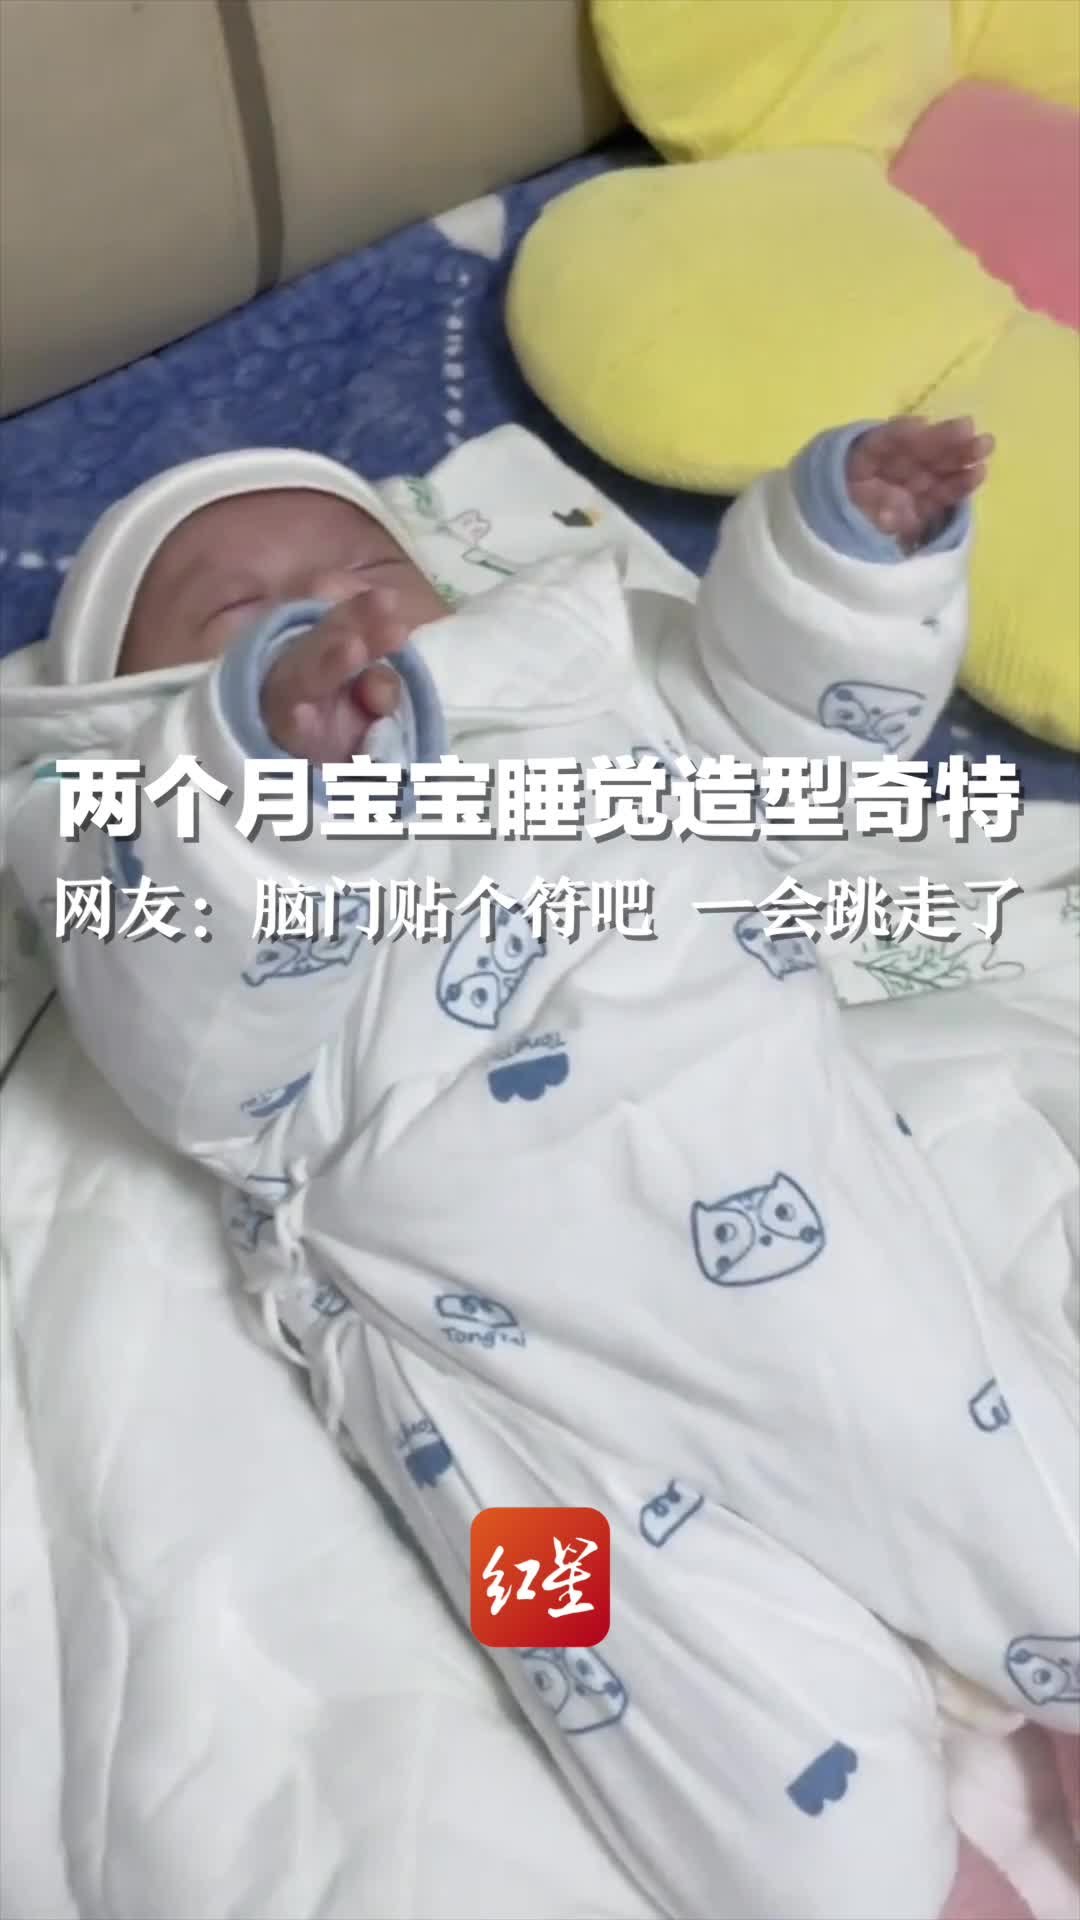 两个月大的婴儿在洗澡时哭泣图片下载 - 觅知网